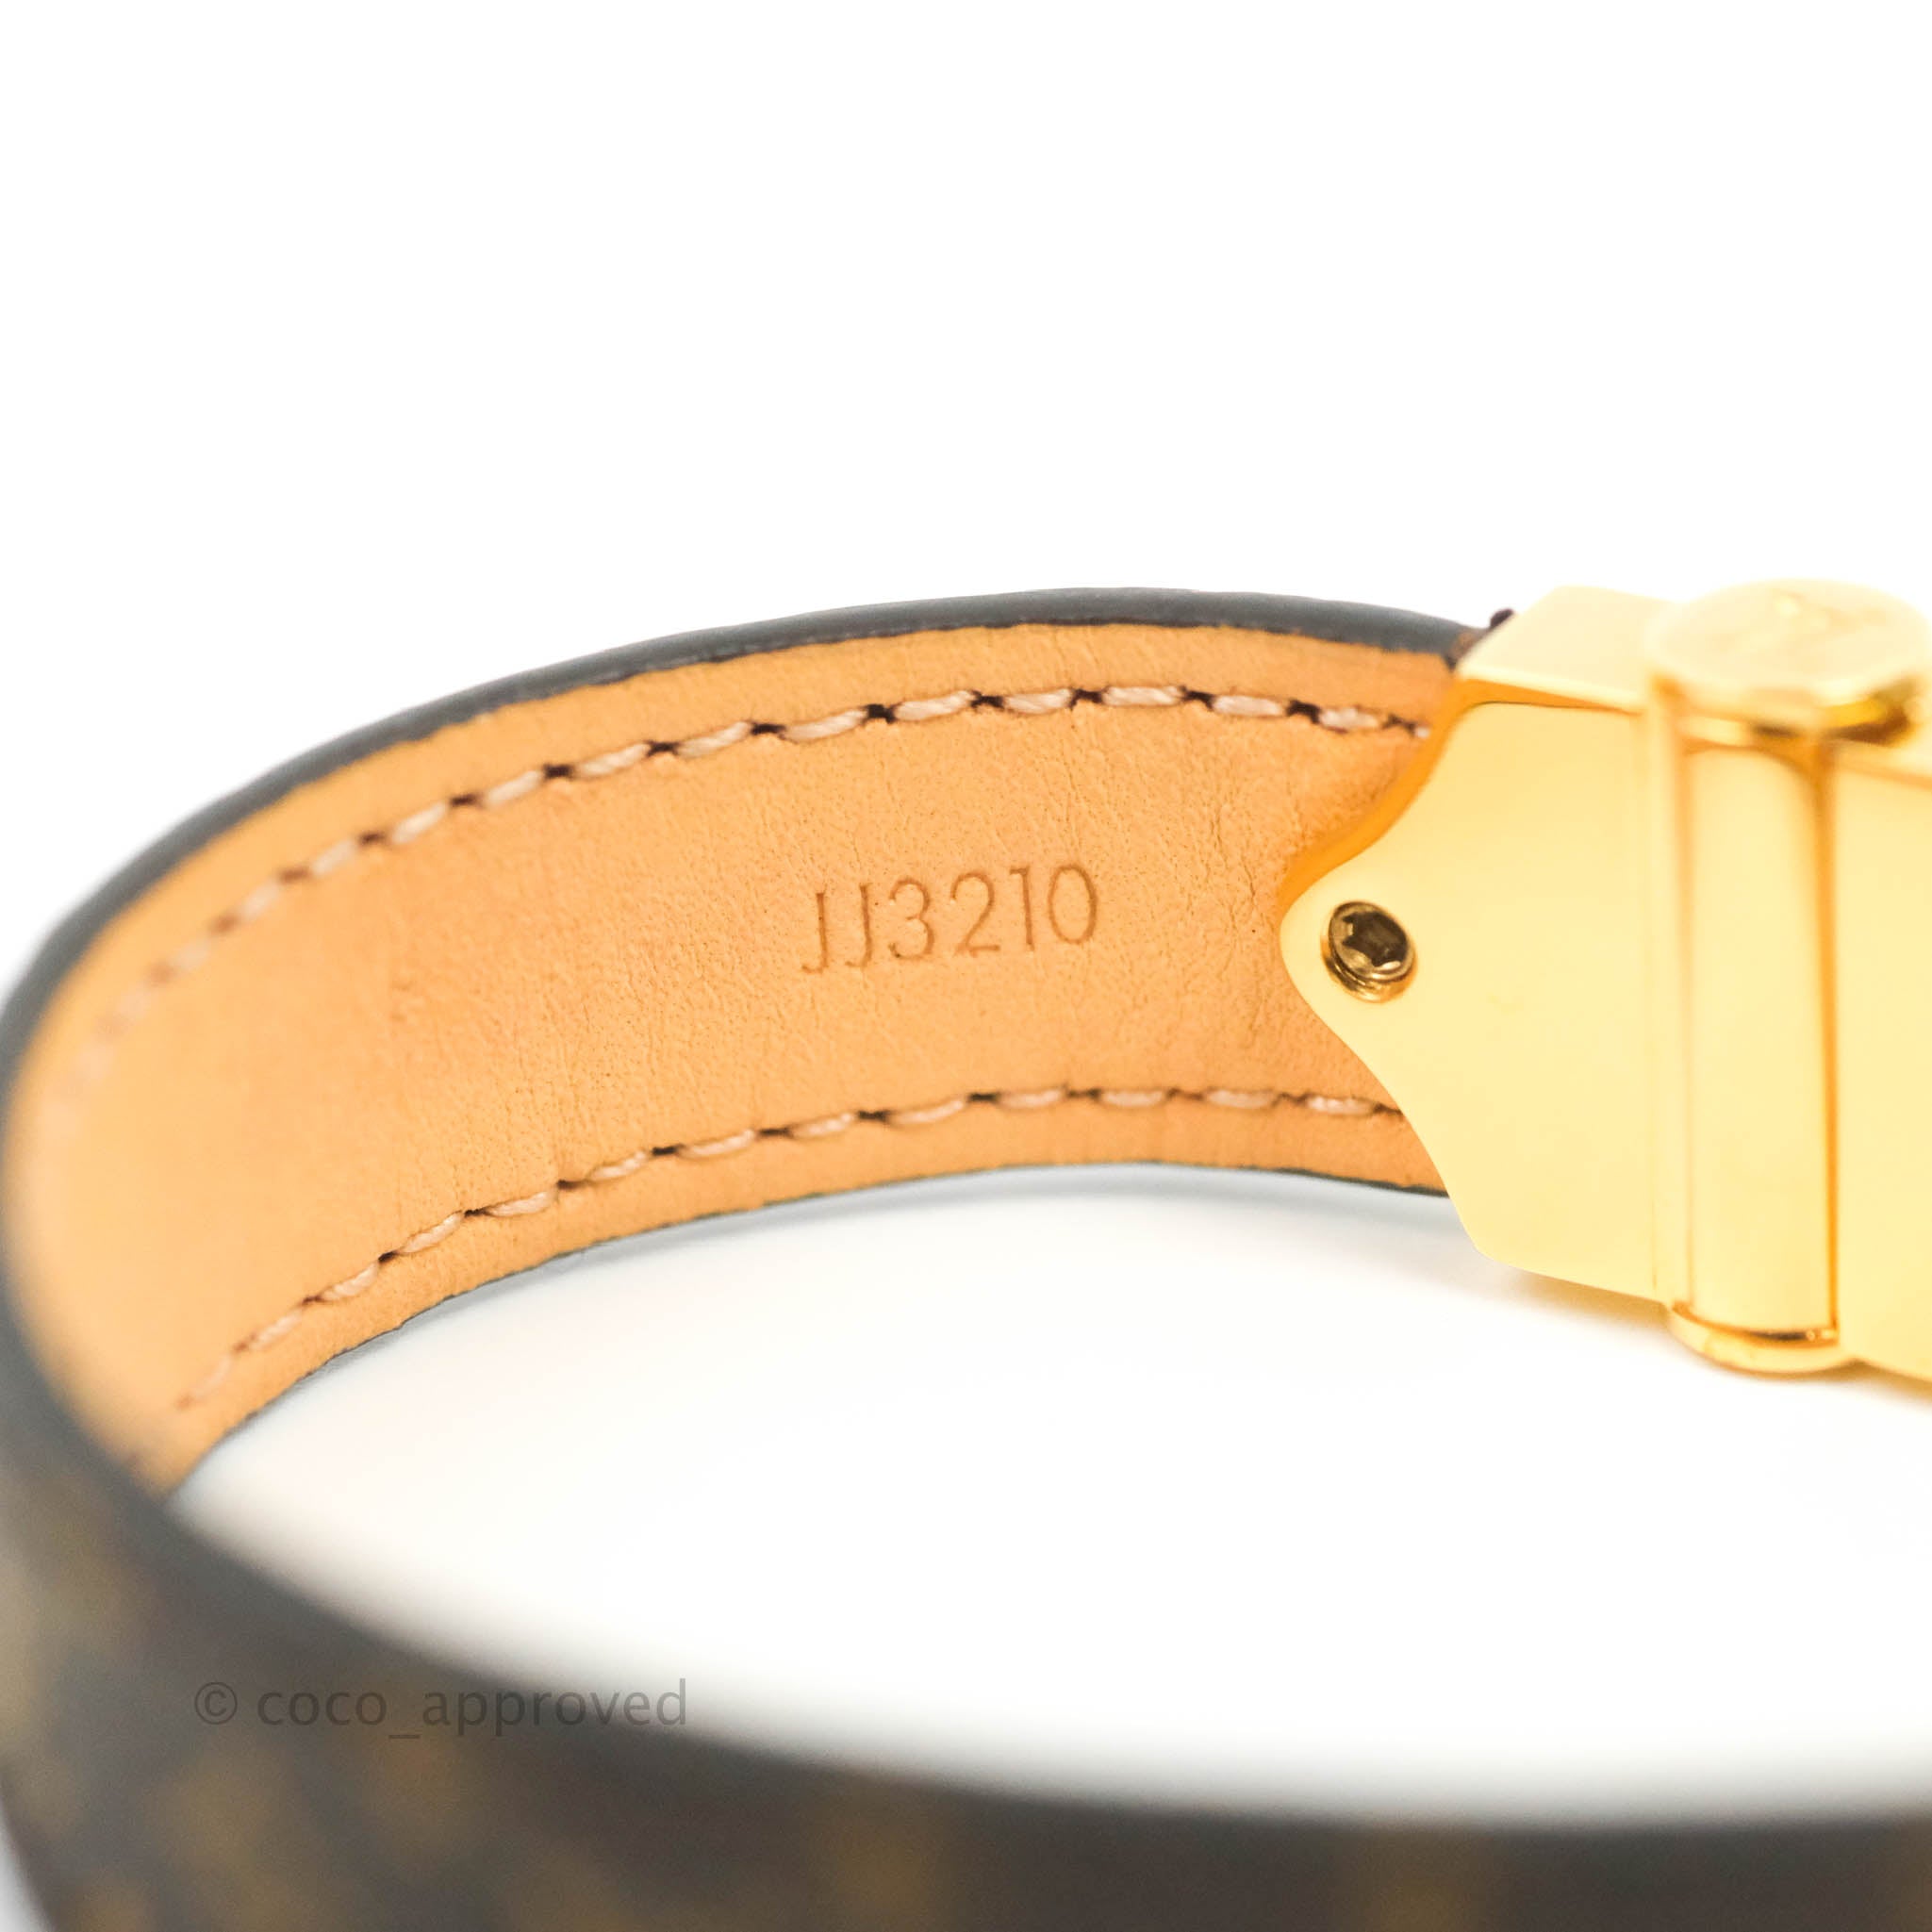 Louis Vuitton Nano Monogram bracelet - Brown, Brass Wrap, Bracelets -  LOU804190